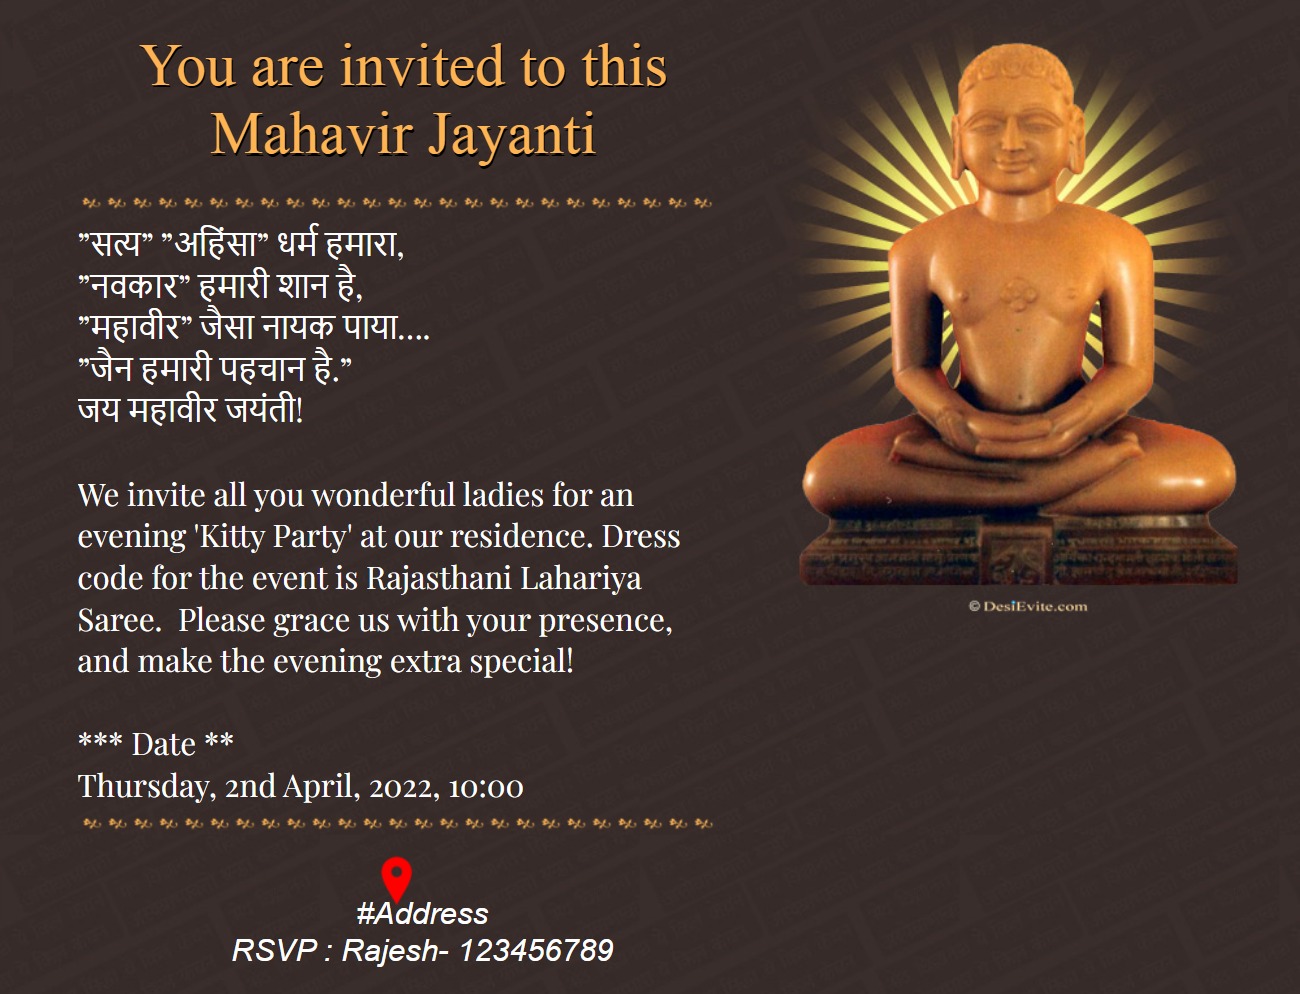 Mahavir jayanthi invitation